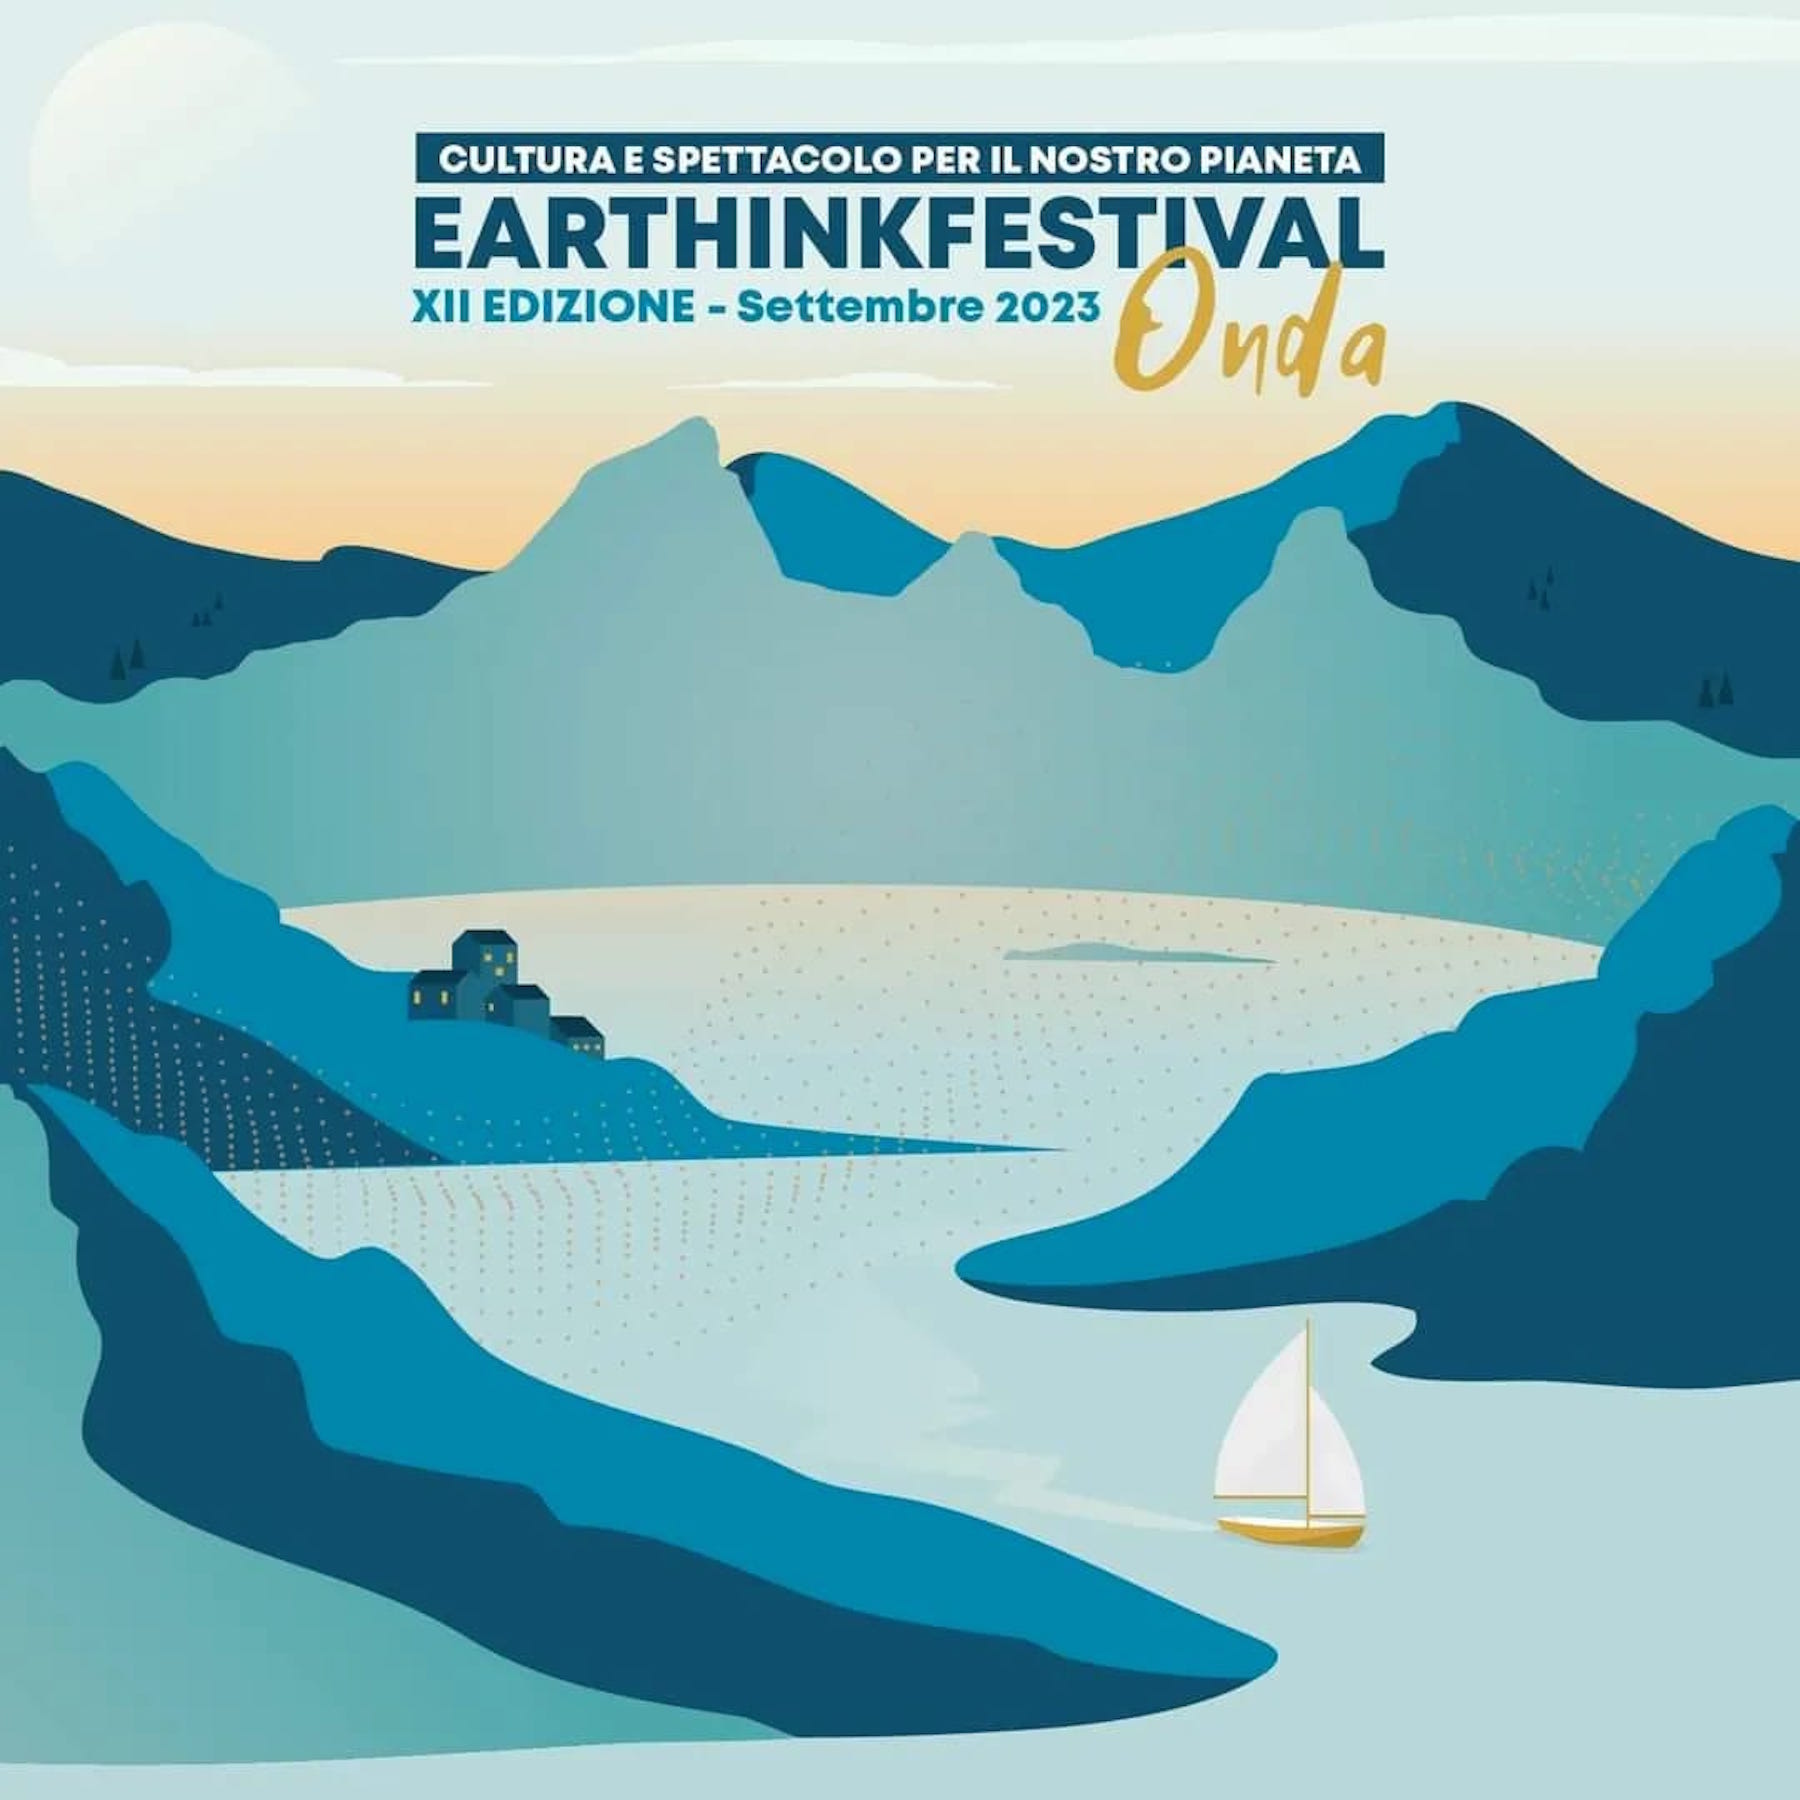 earthink festival 2023, cultura e spettacolo per il nostro pianeta